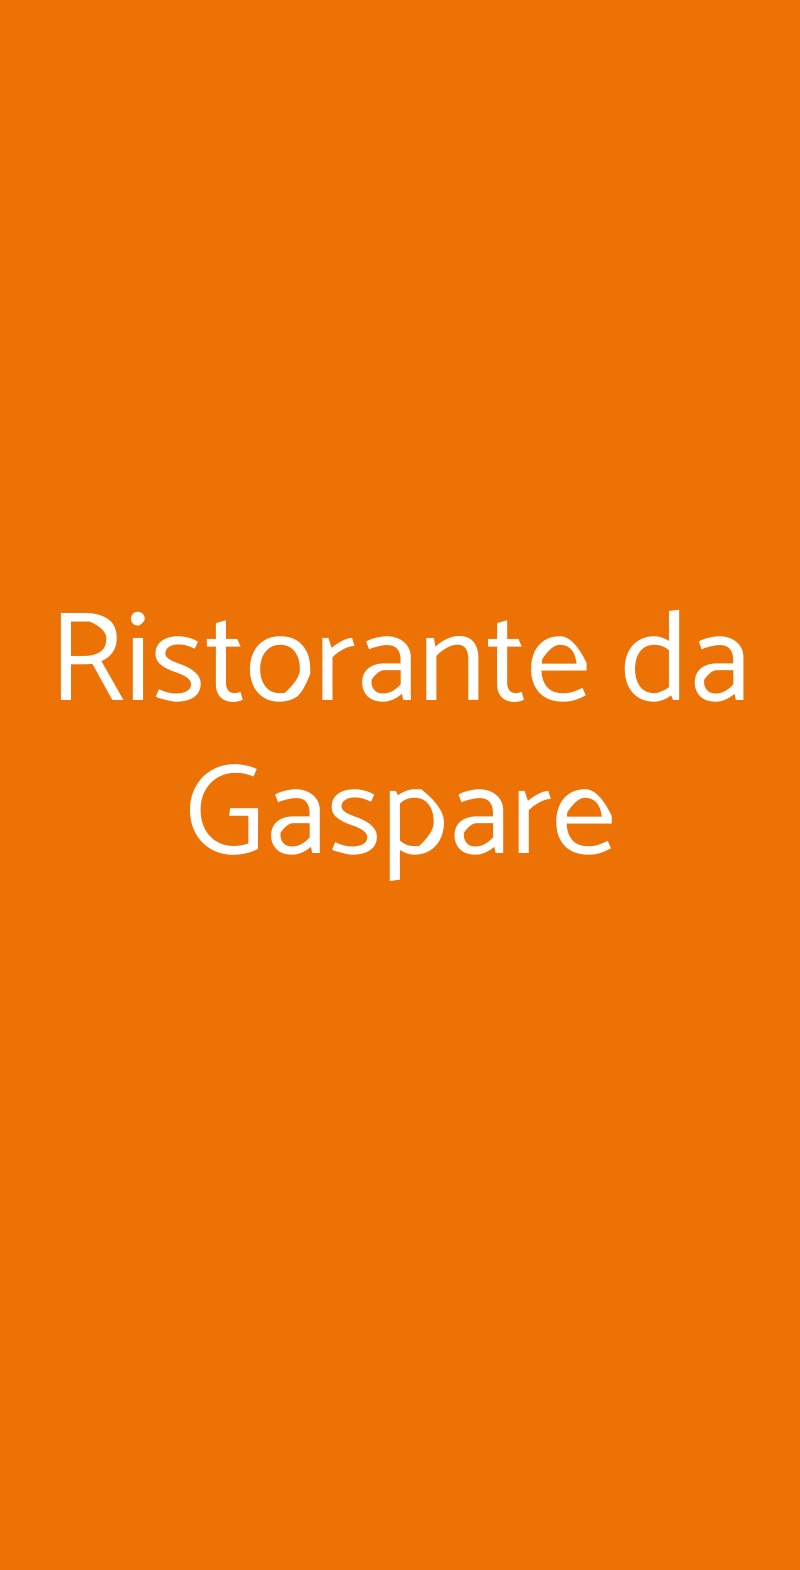 Ristorante da Gaspare Milano menù 1 pagina